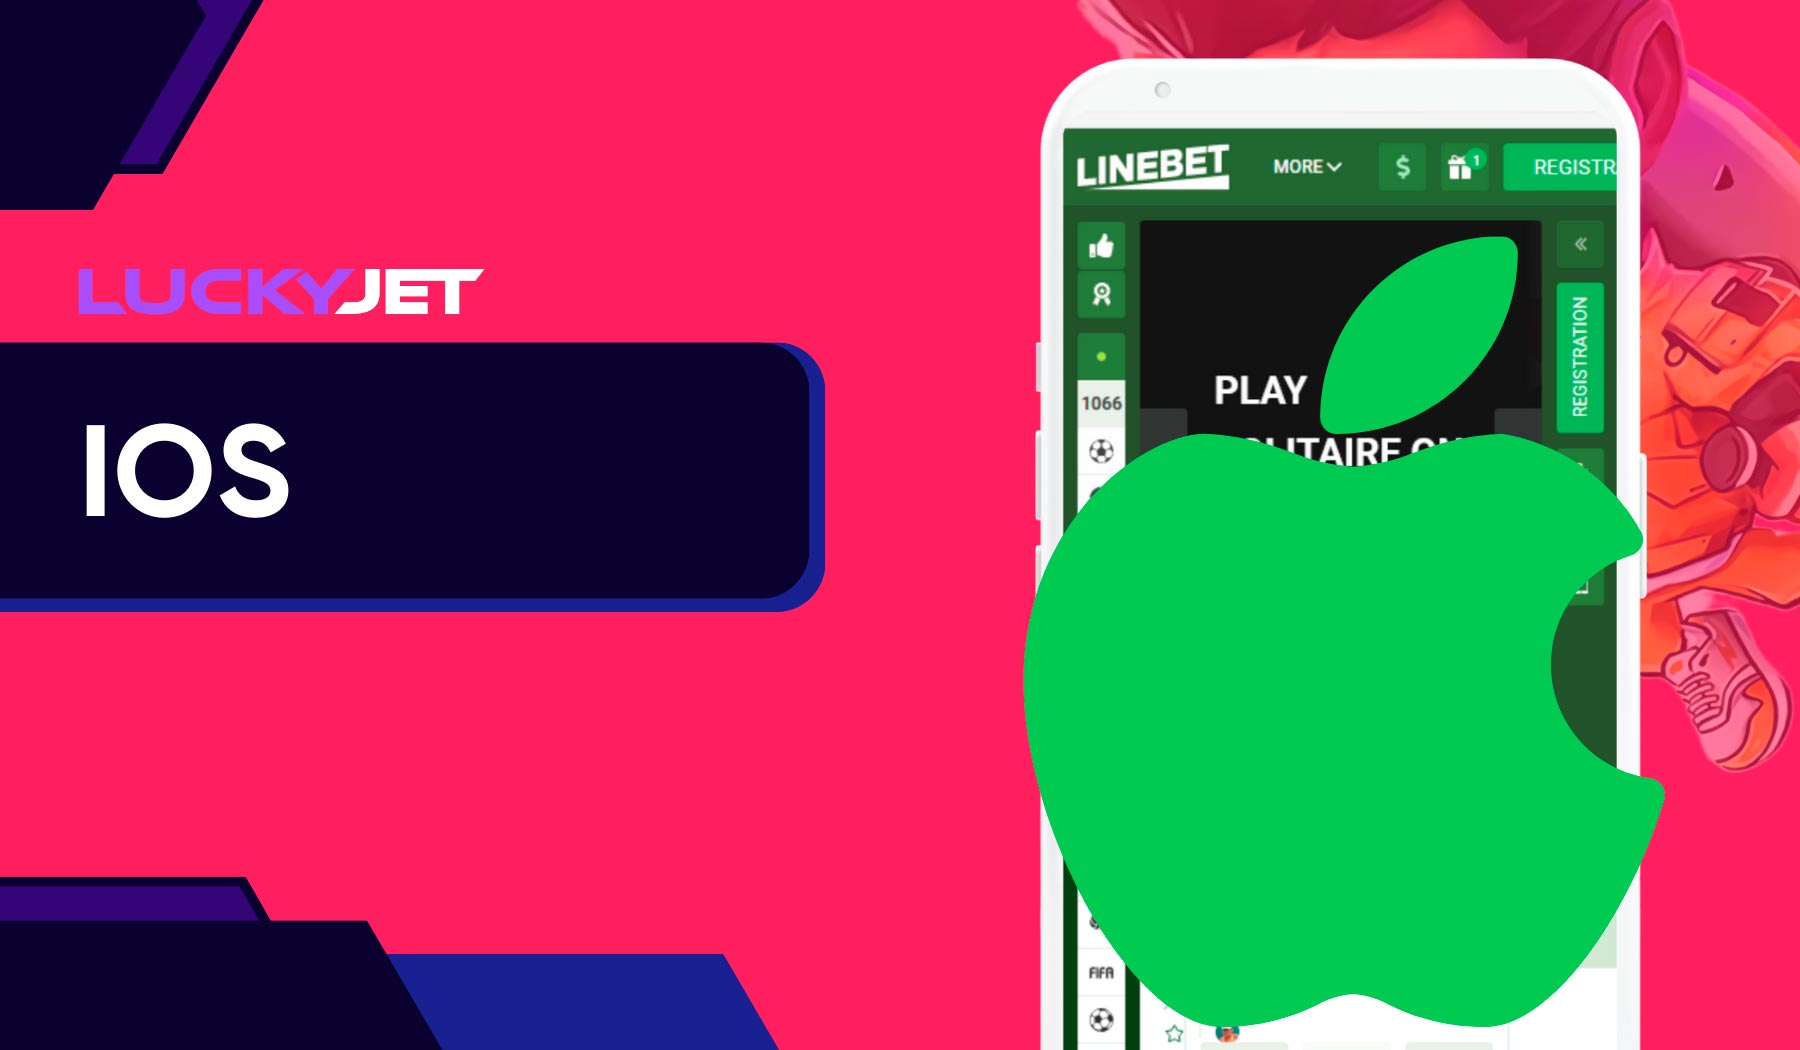 The Linebet Ios app